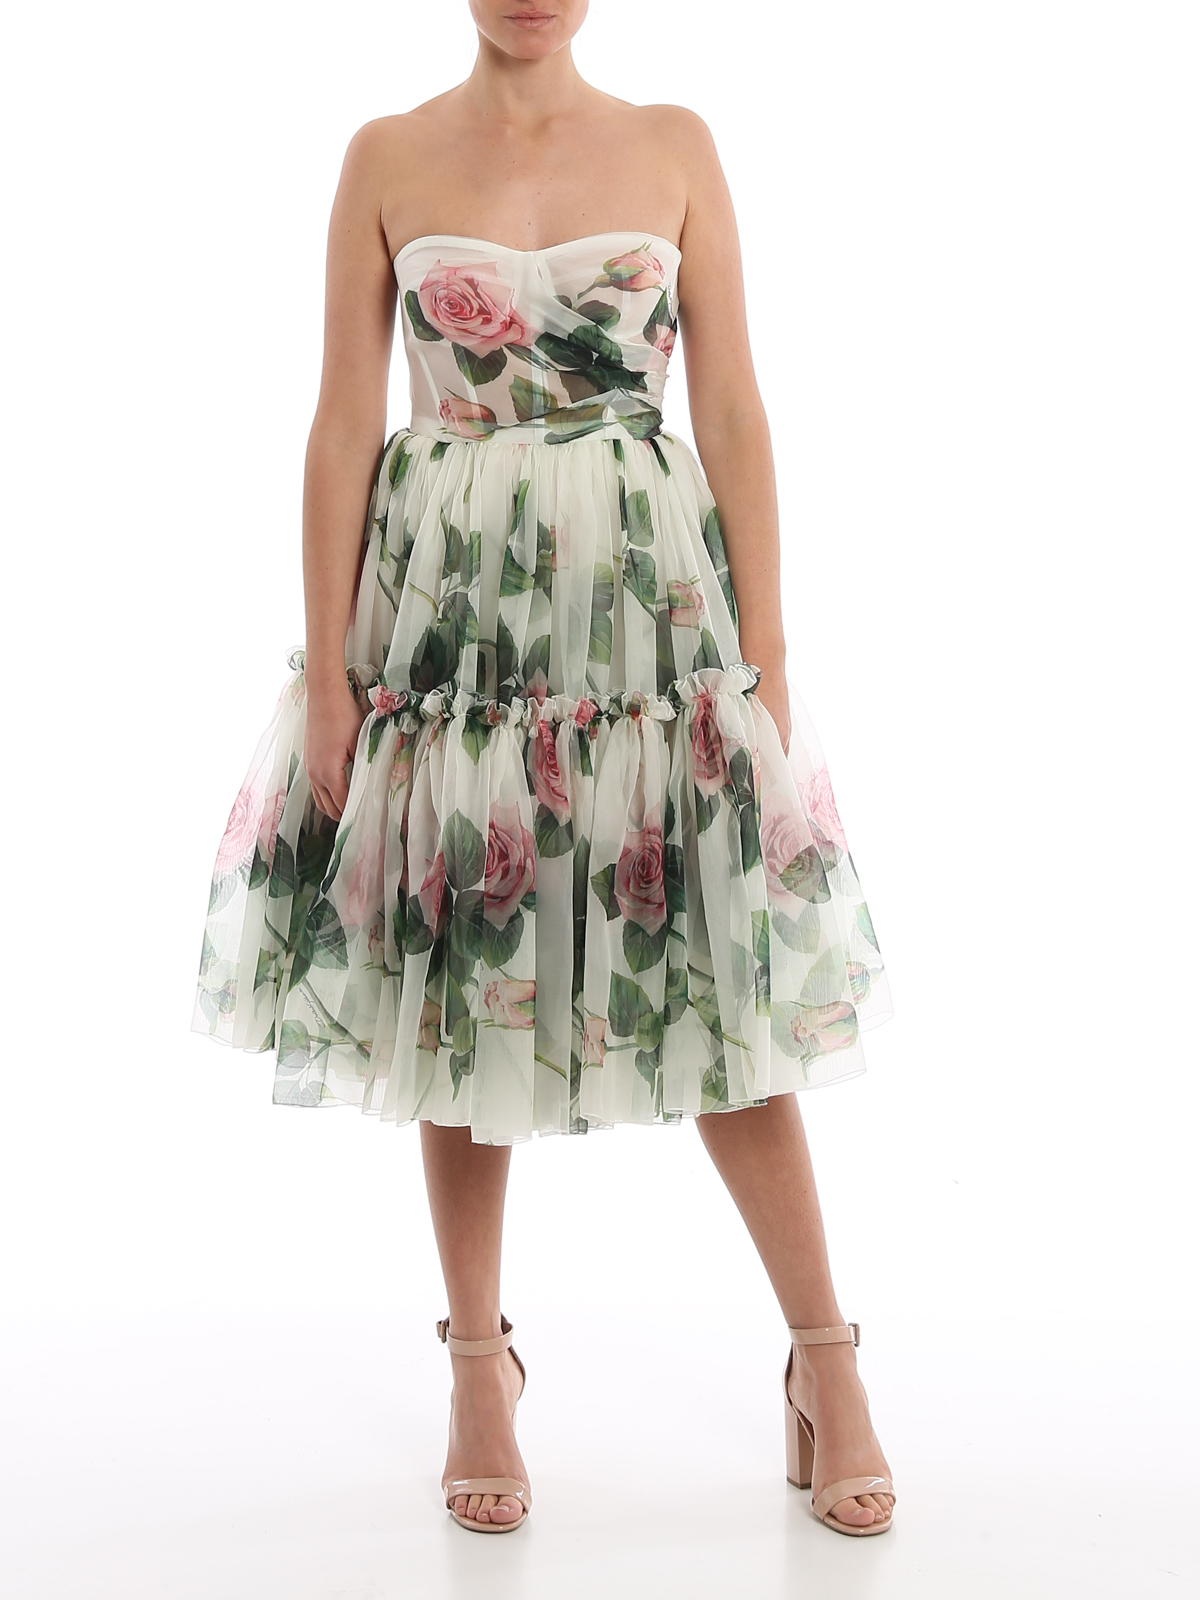 Tropical Rose printed midi dress ...